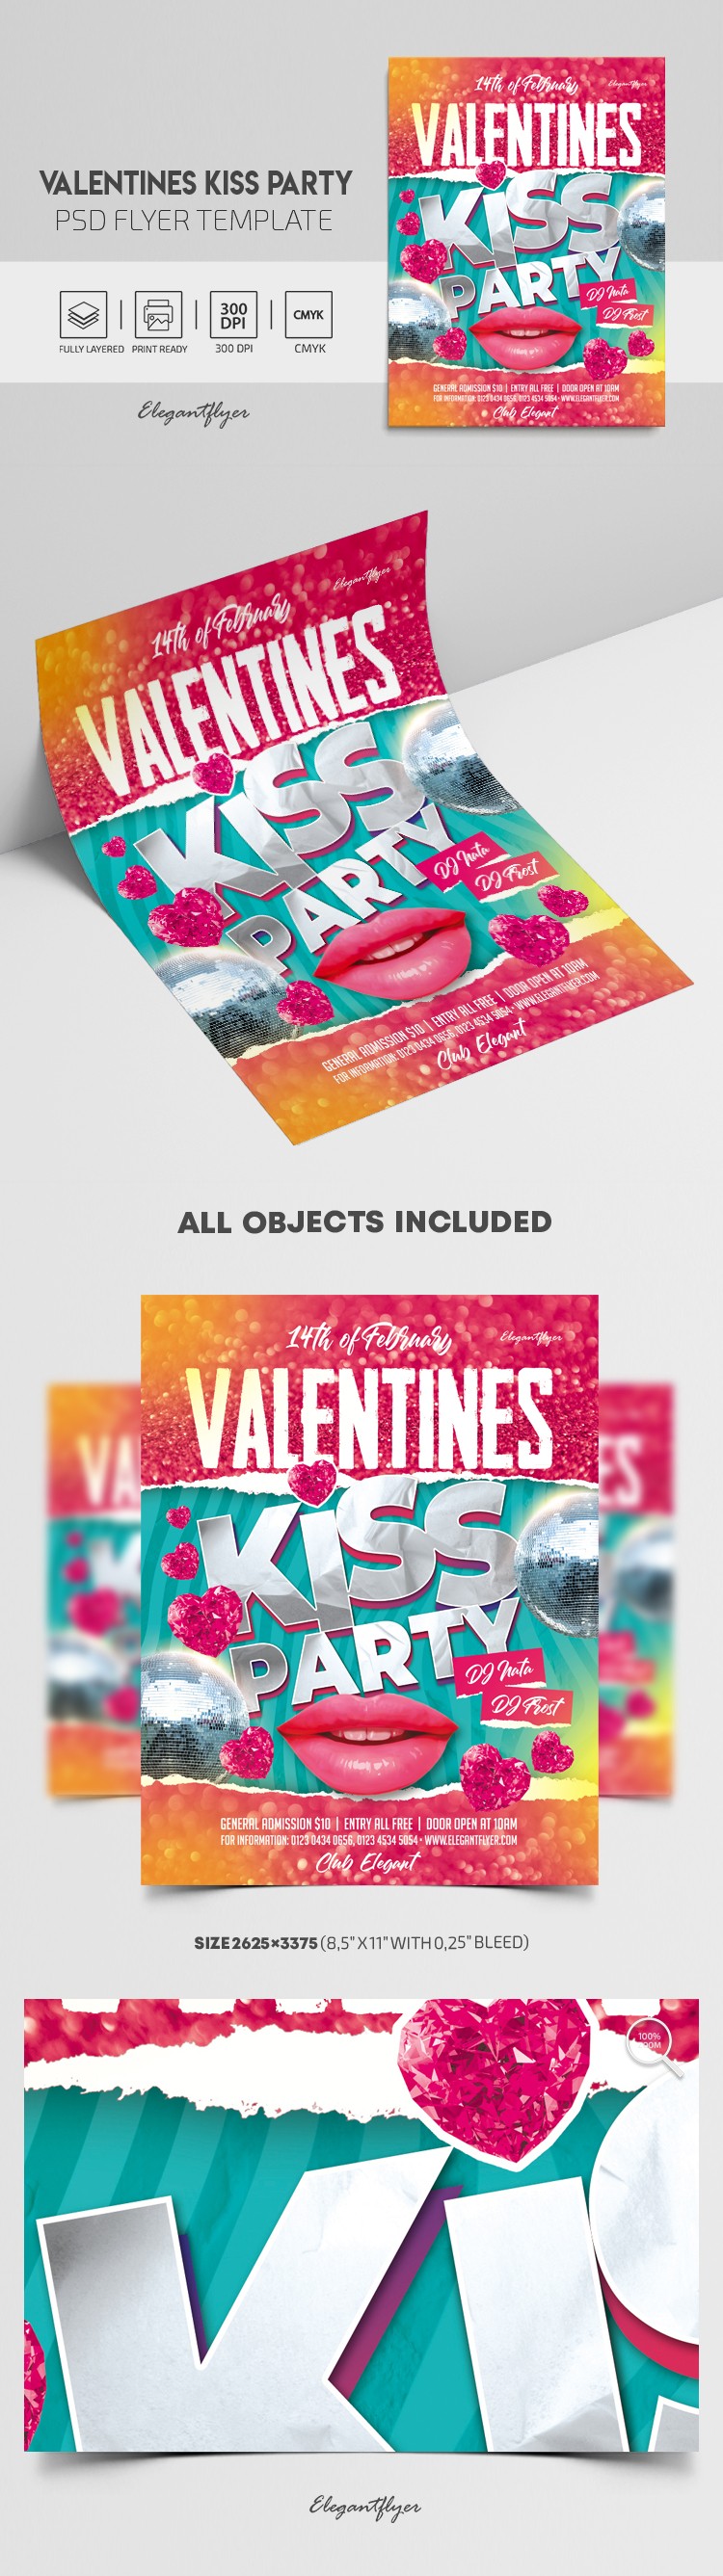 Flyer de fête du baiser de la Saint-Valentin by ElegantFlyer